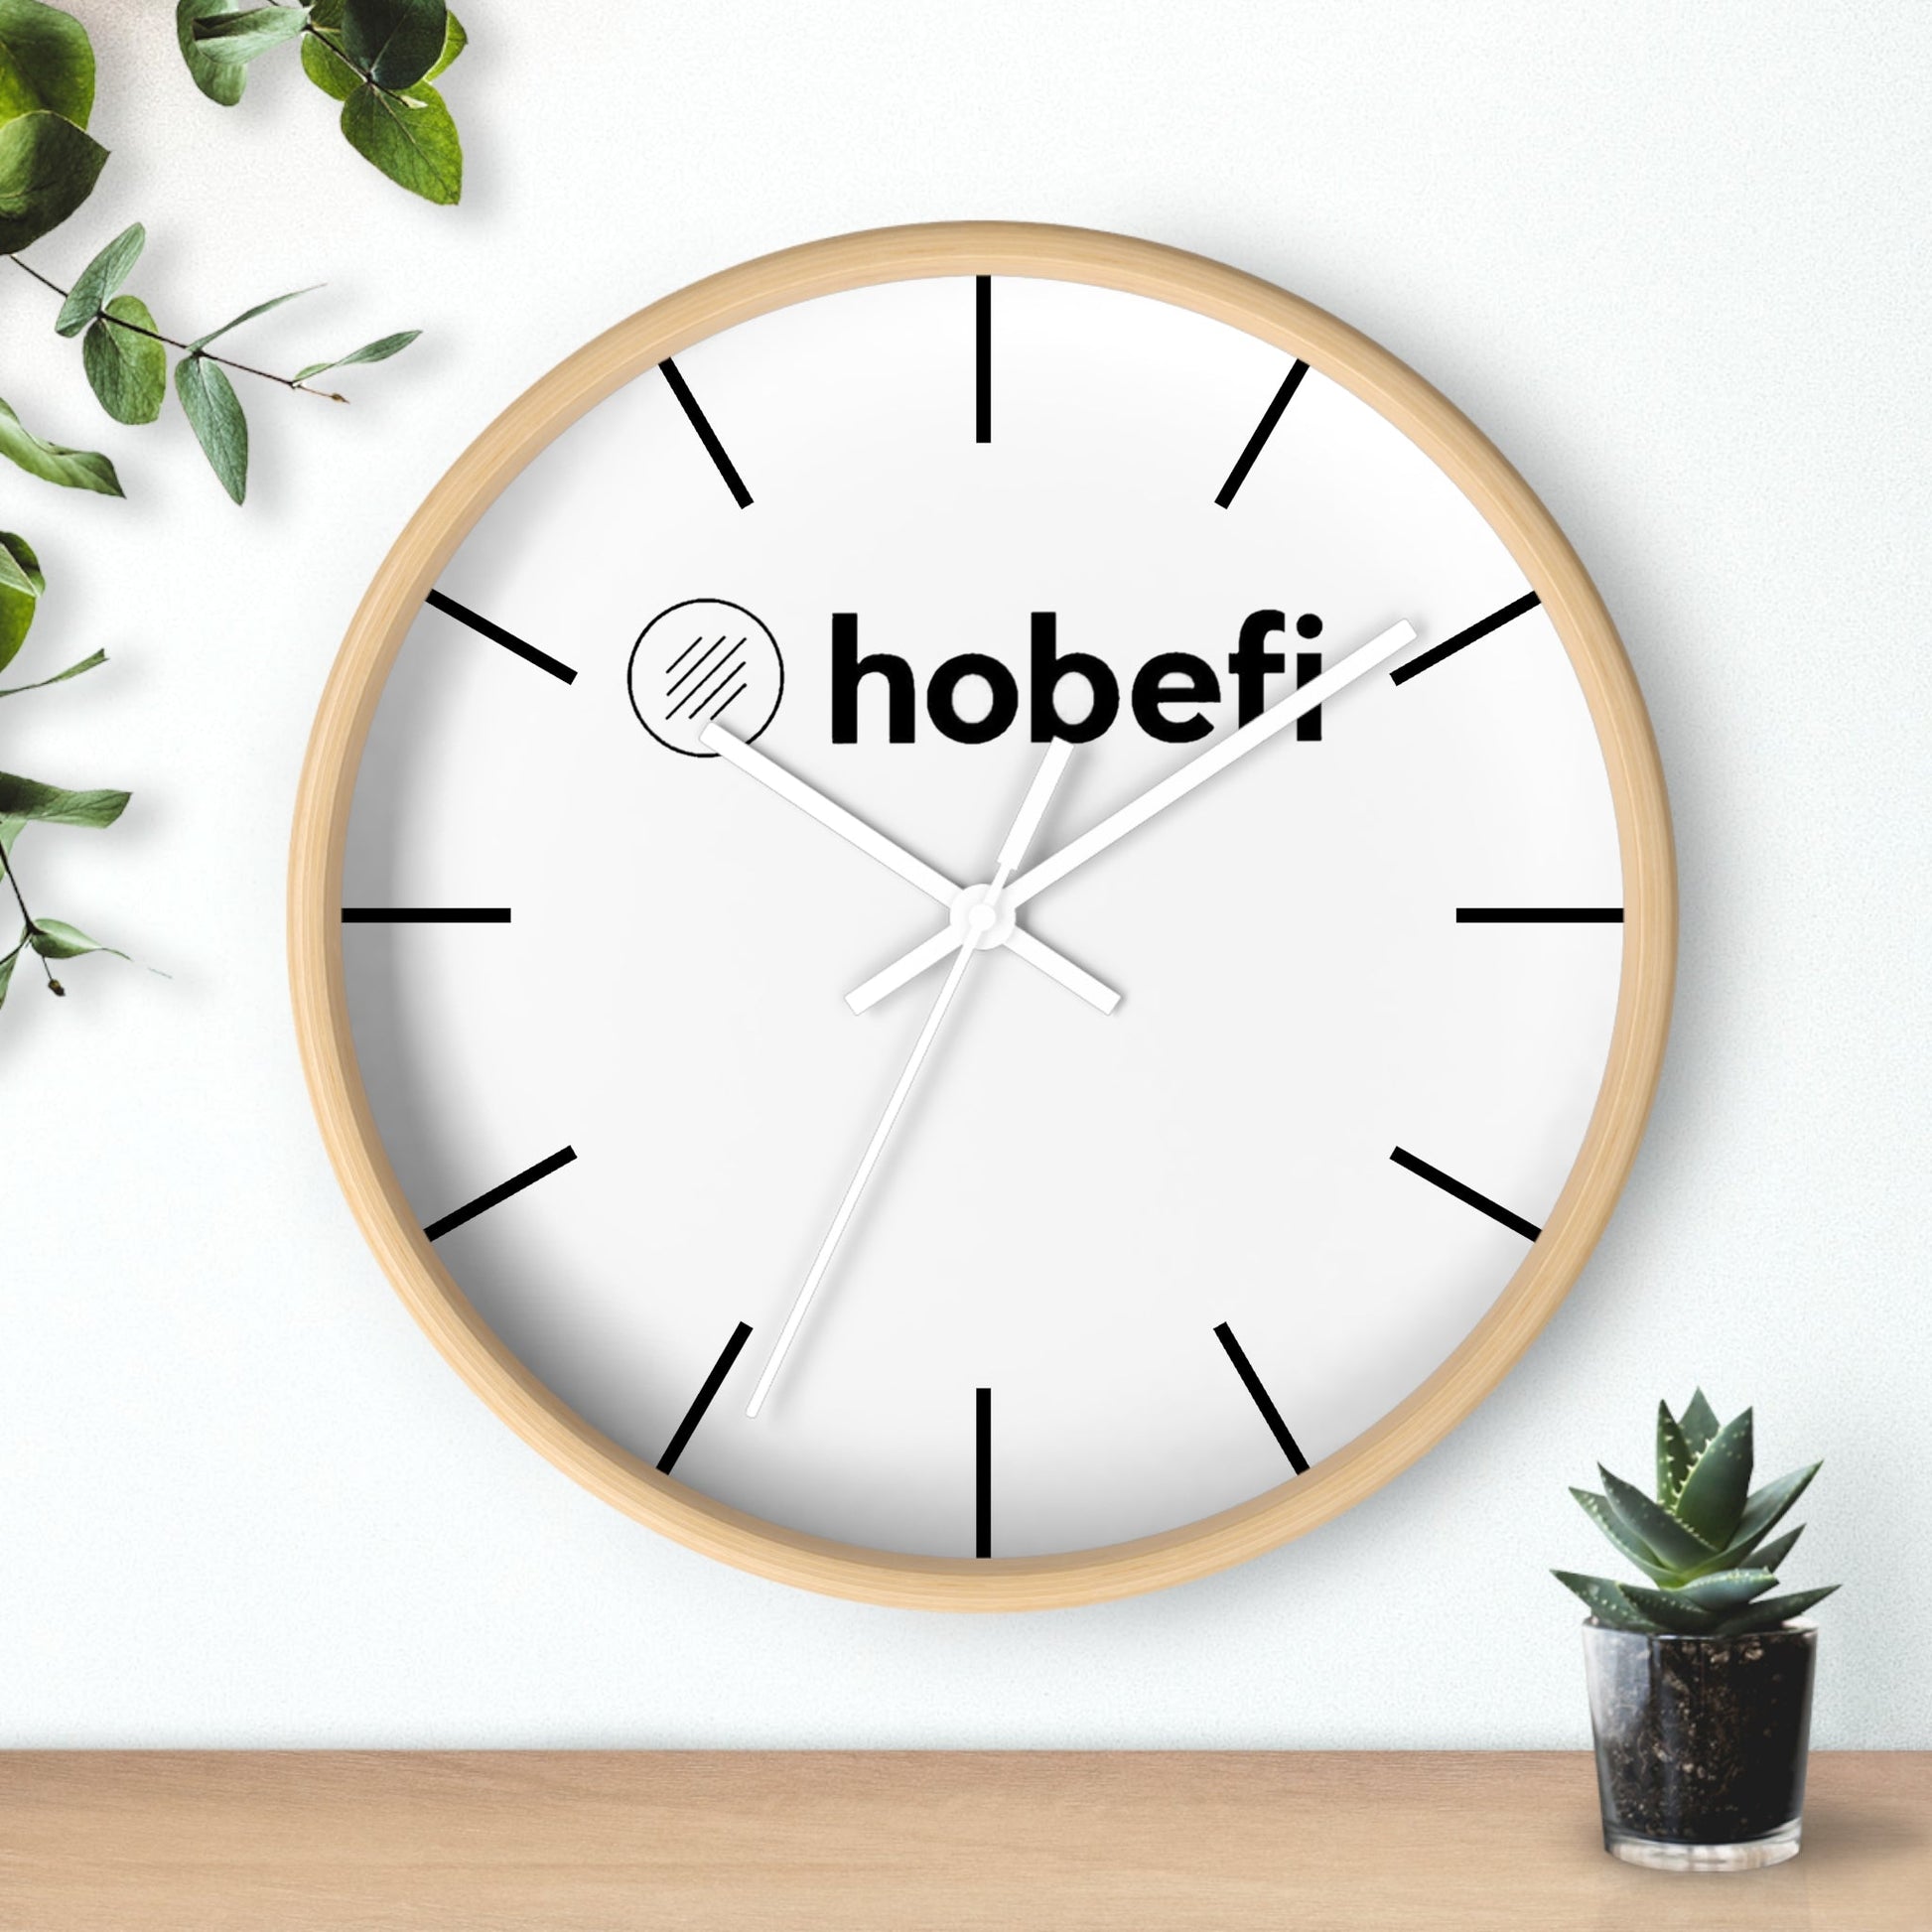 Hobefi Home Decor Wall Clock Decor